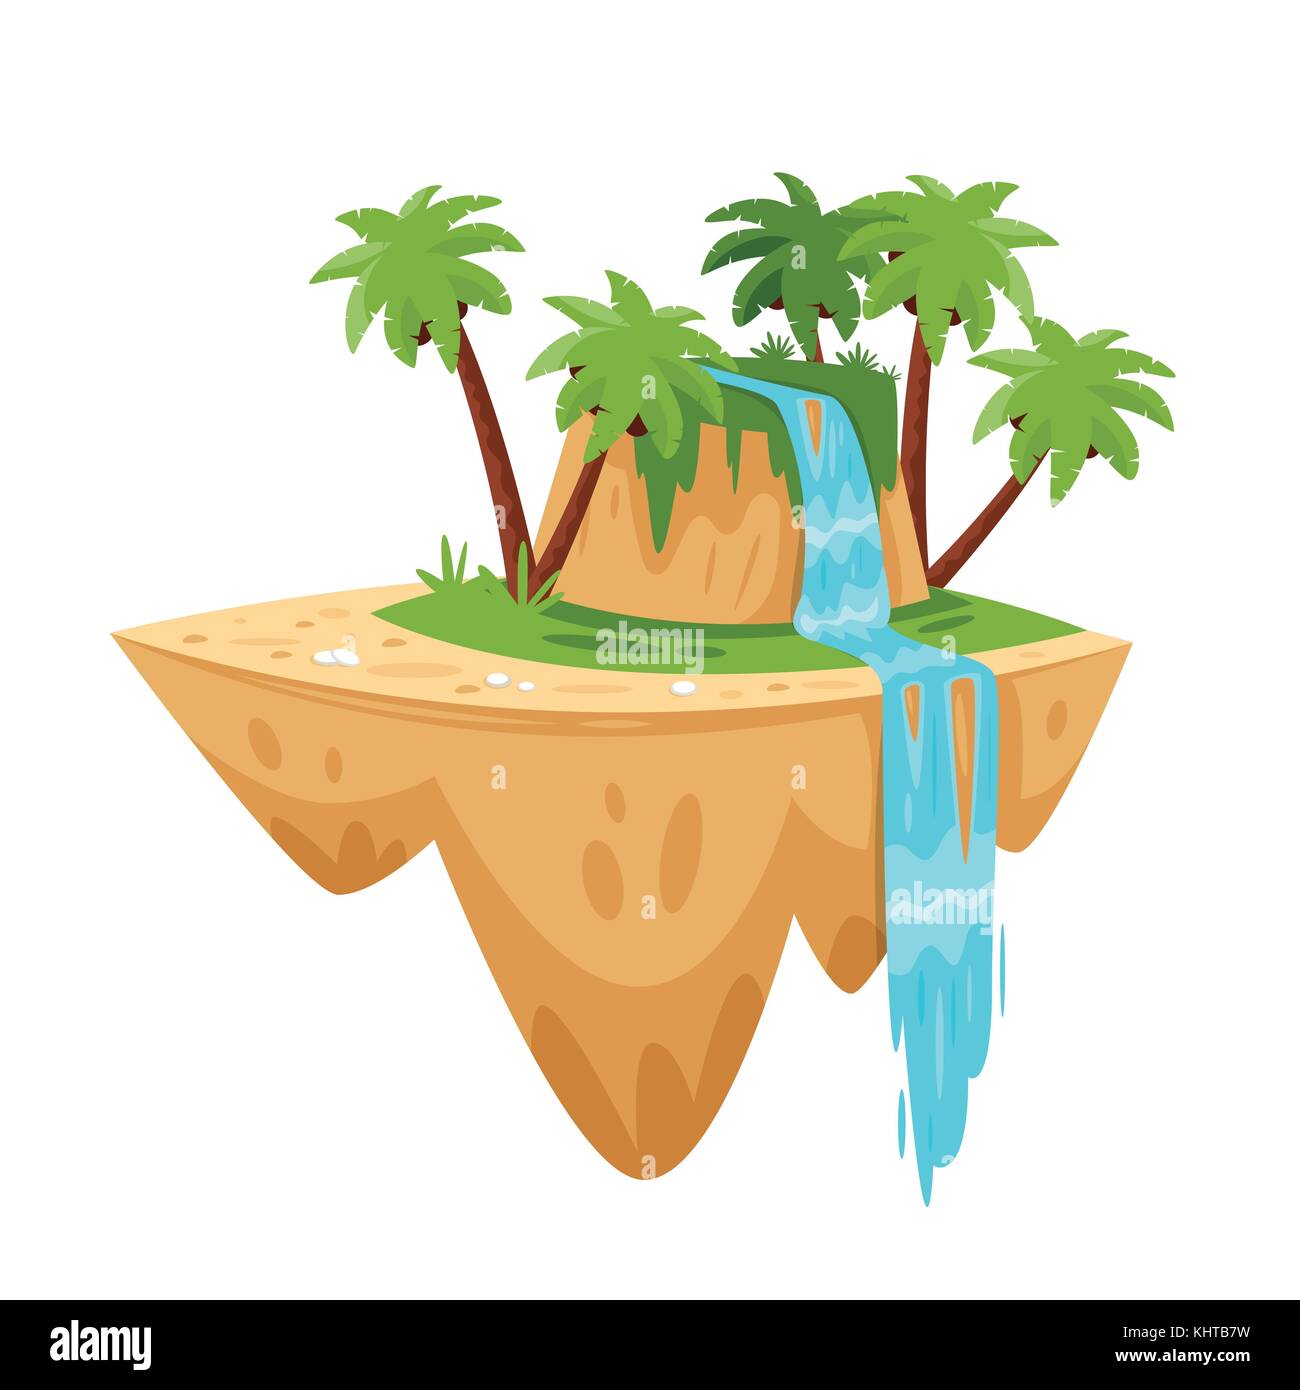 Vektor Cartoon Illustration von Spiel tropischen Insel, auf weißem Hintergrund. Spiel Benutzeroberfläche (GUI) Element für Videospiele, Computer oder Web de Stock Vektor